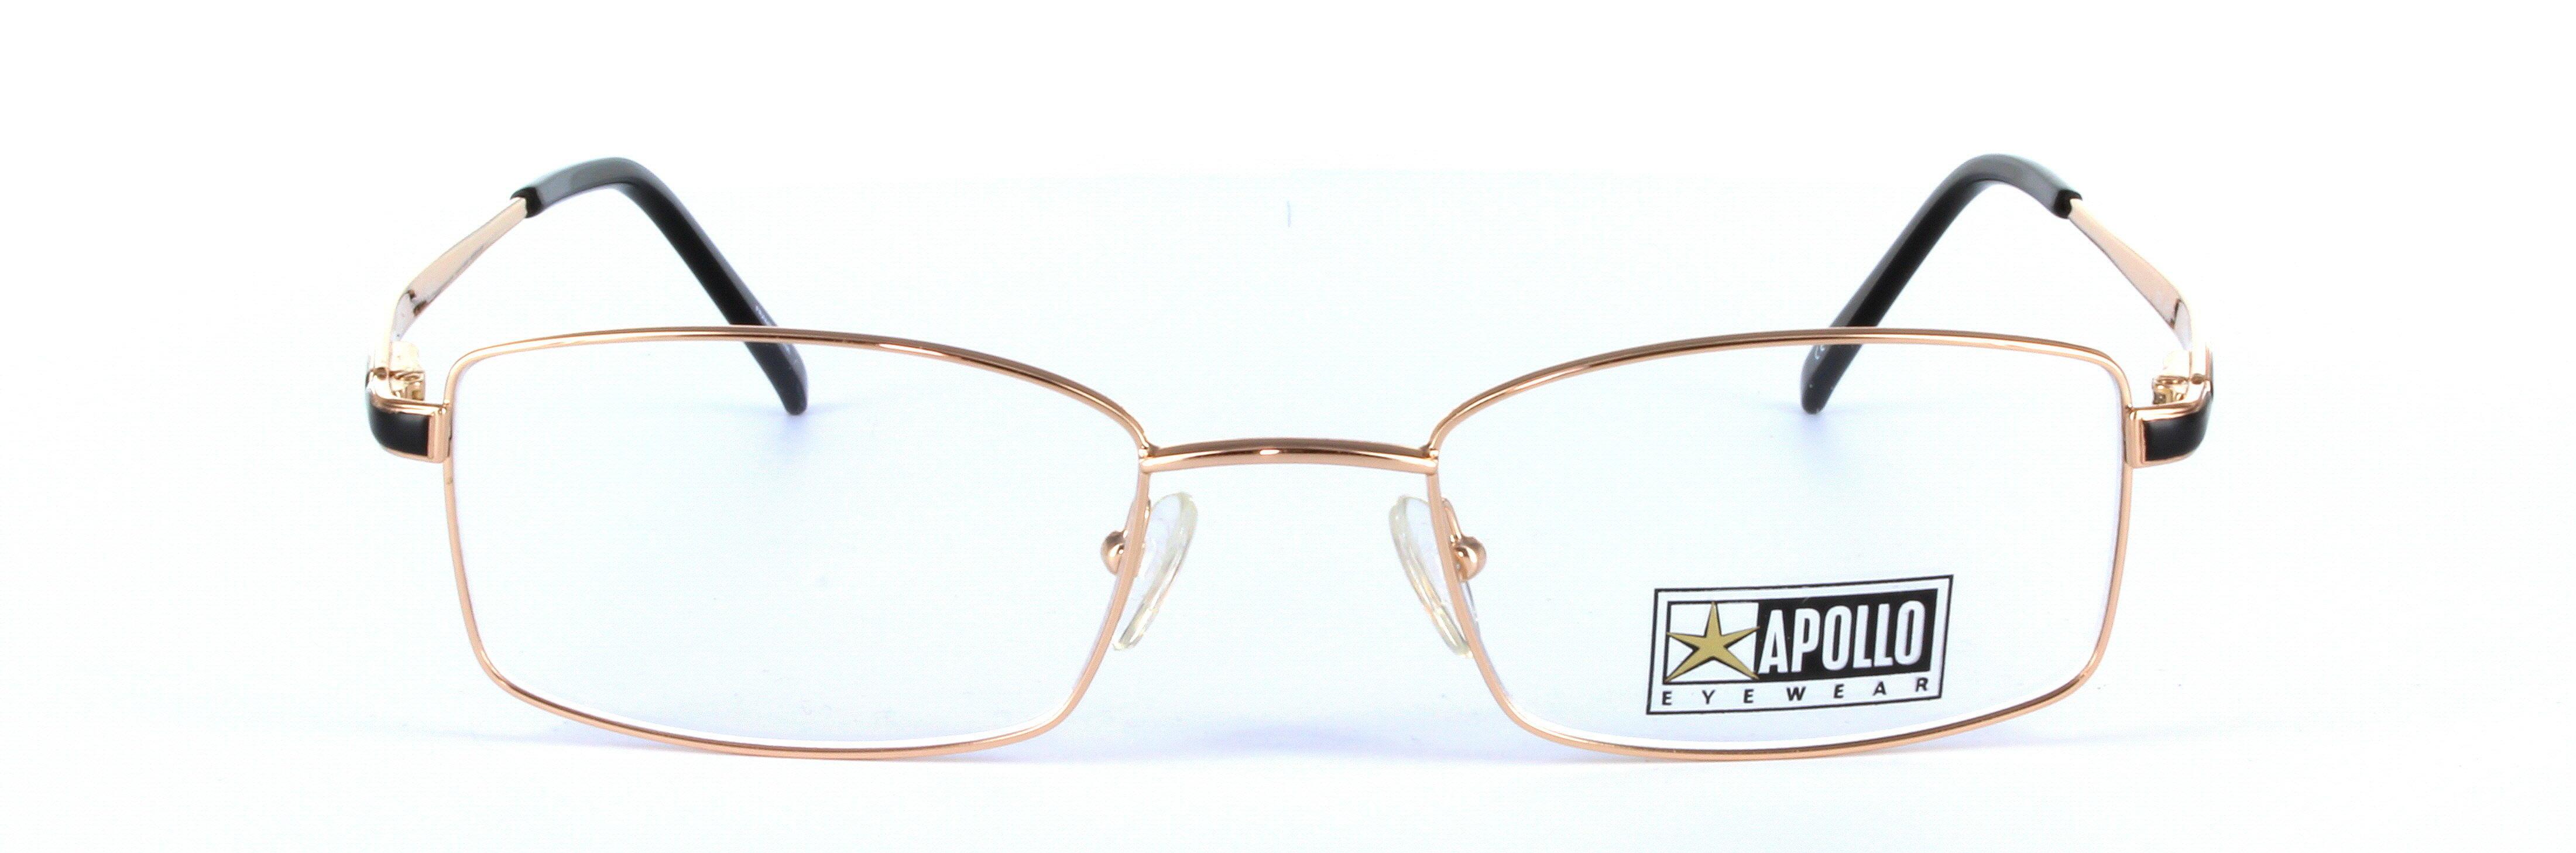 Gold Full Rim Rectangular Metal Glasses Chianti - Image View 4